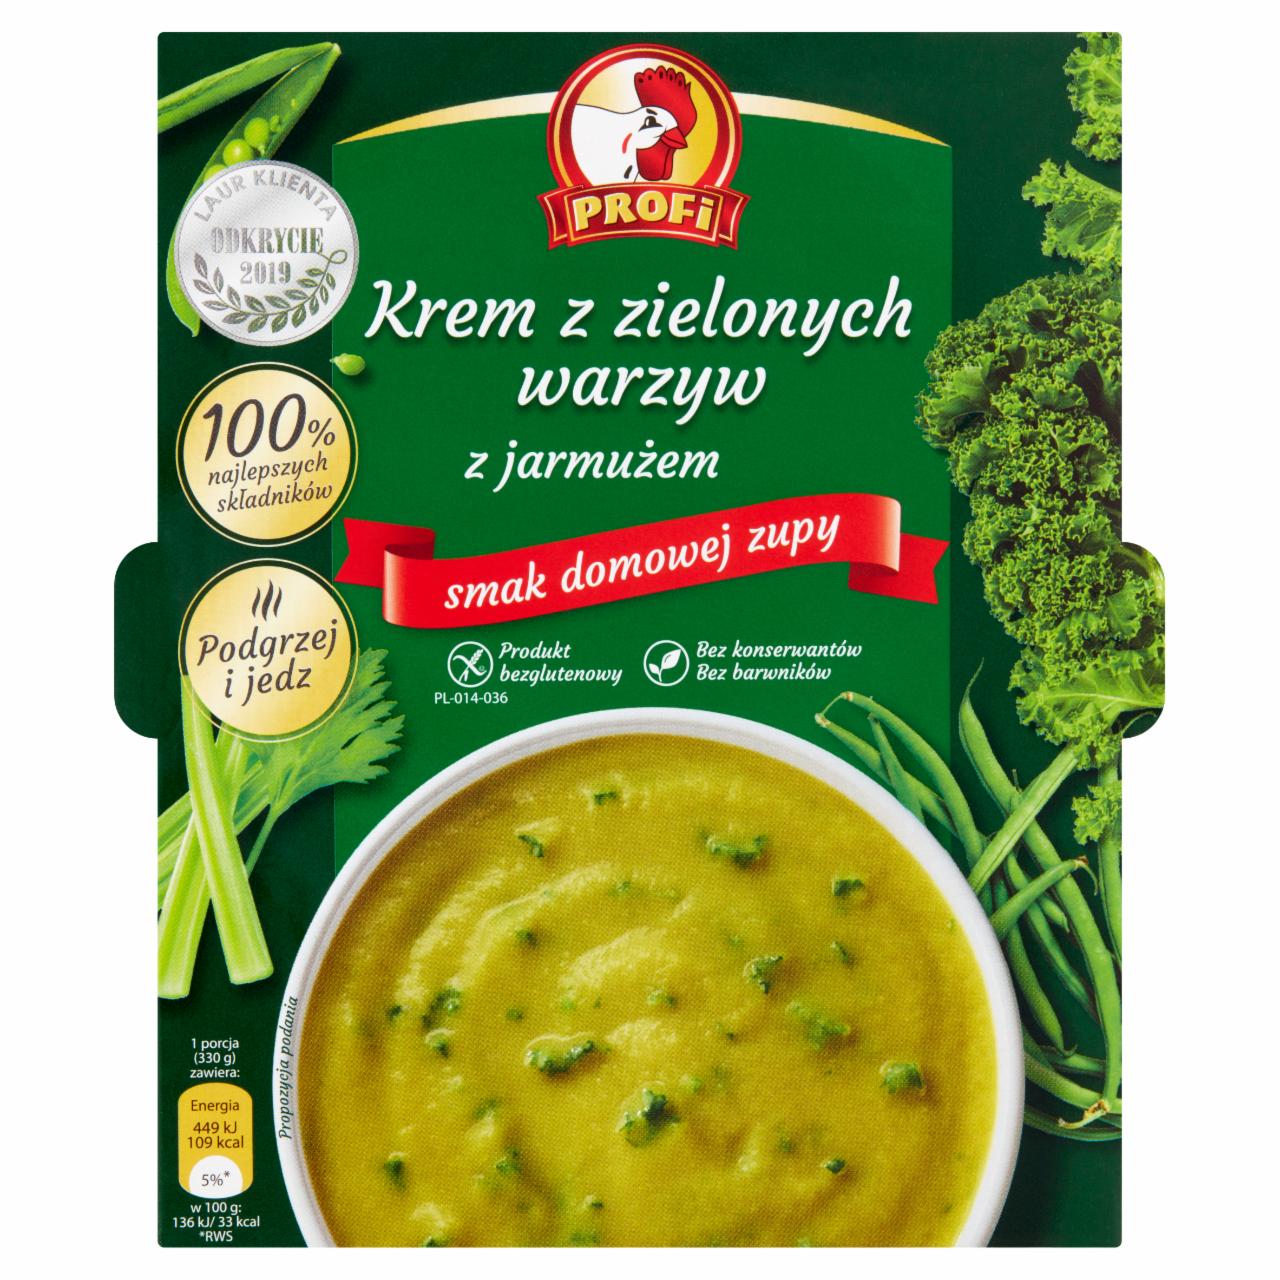 Zdjęcia - Profi Krem z zielonych warzyw z jarmużem 330 g